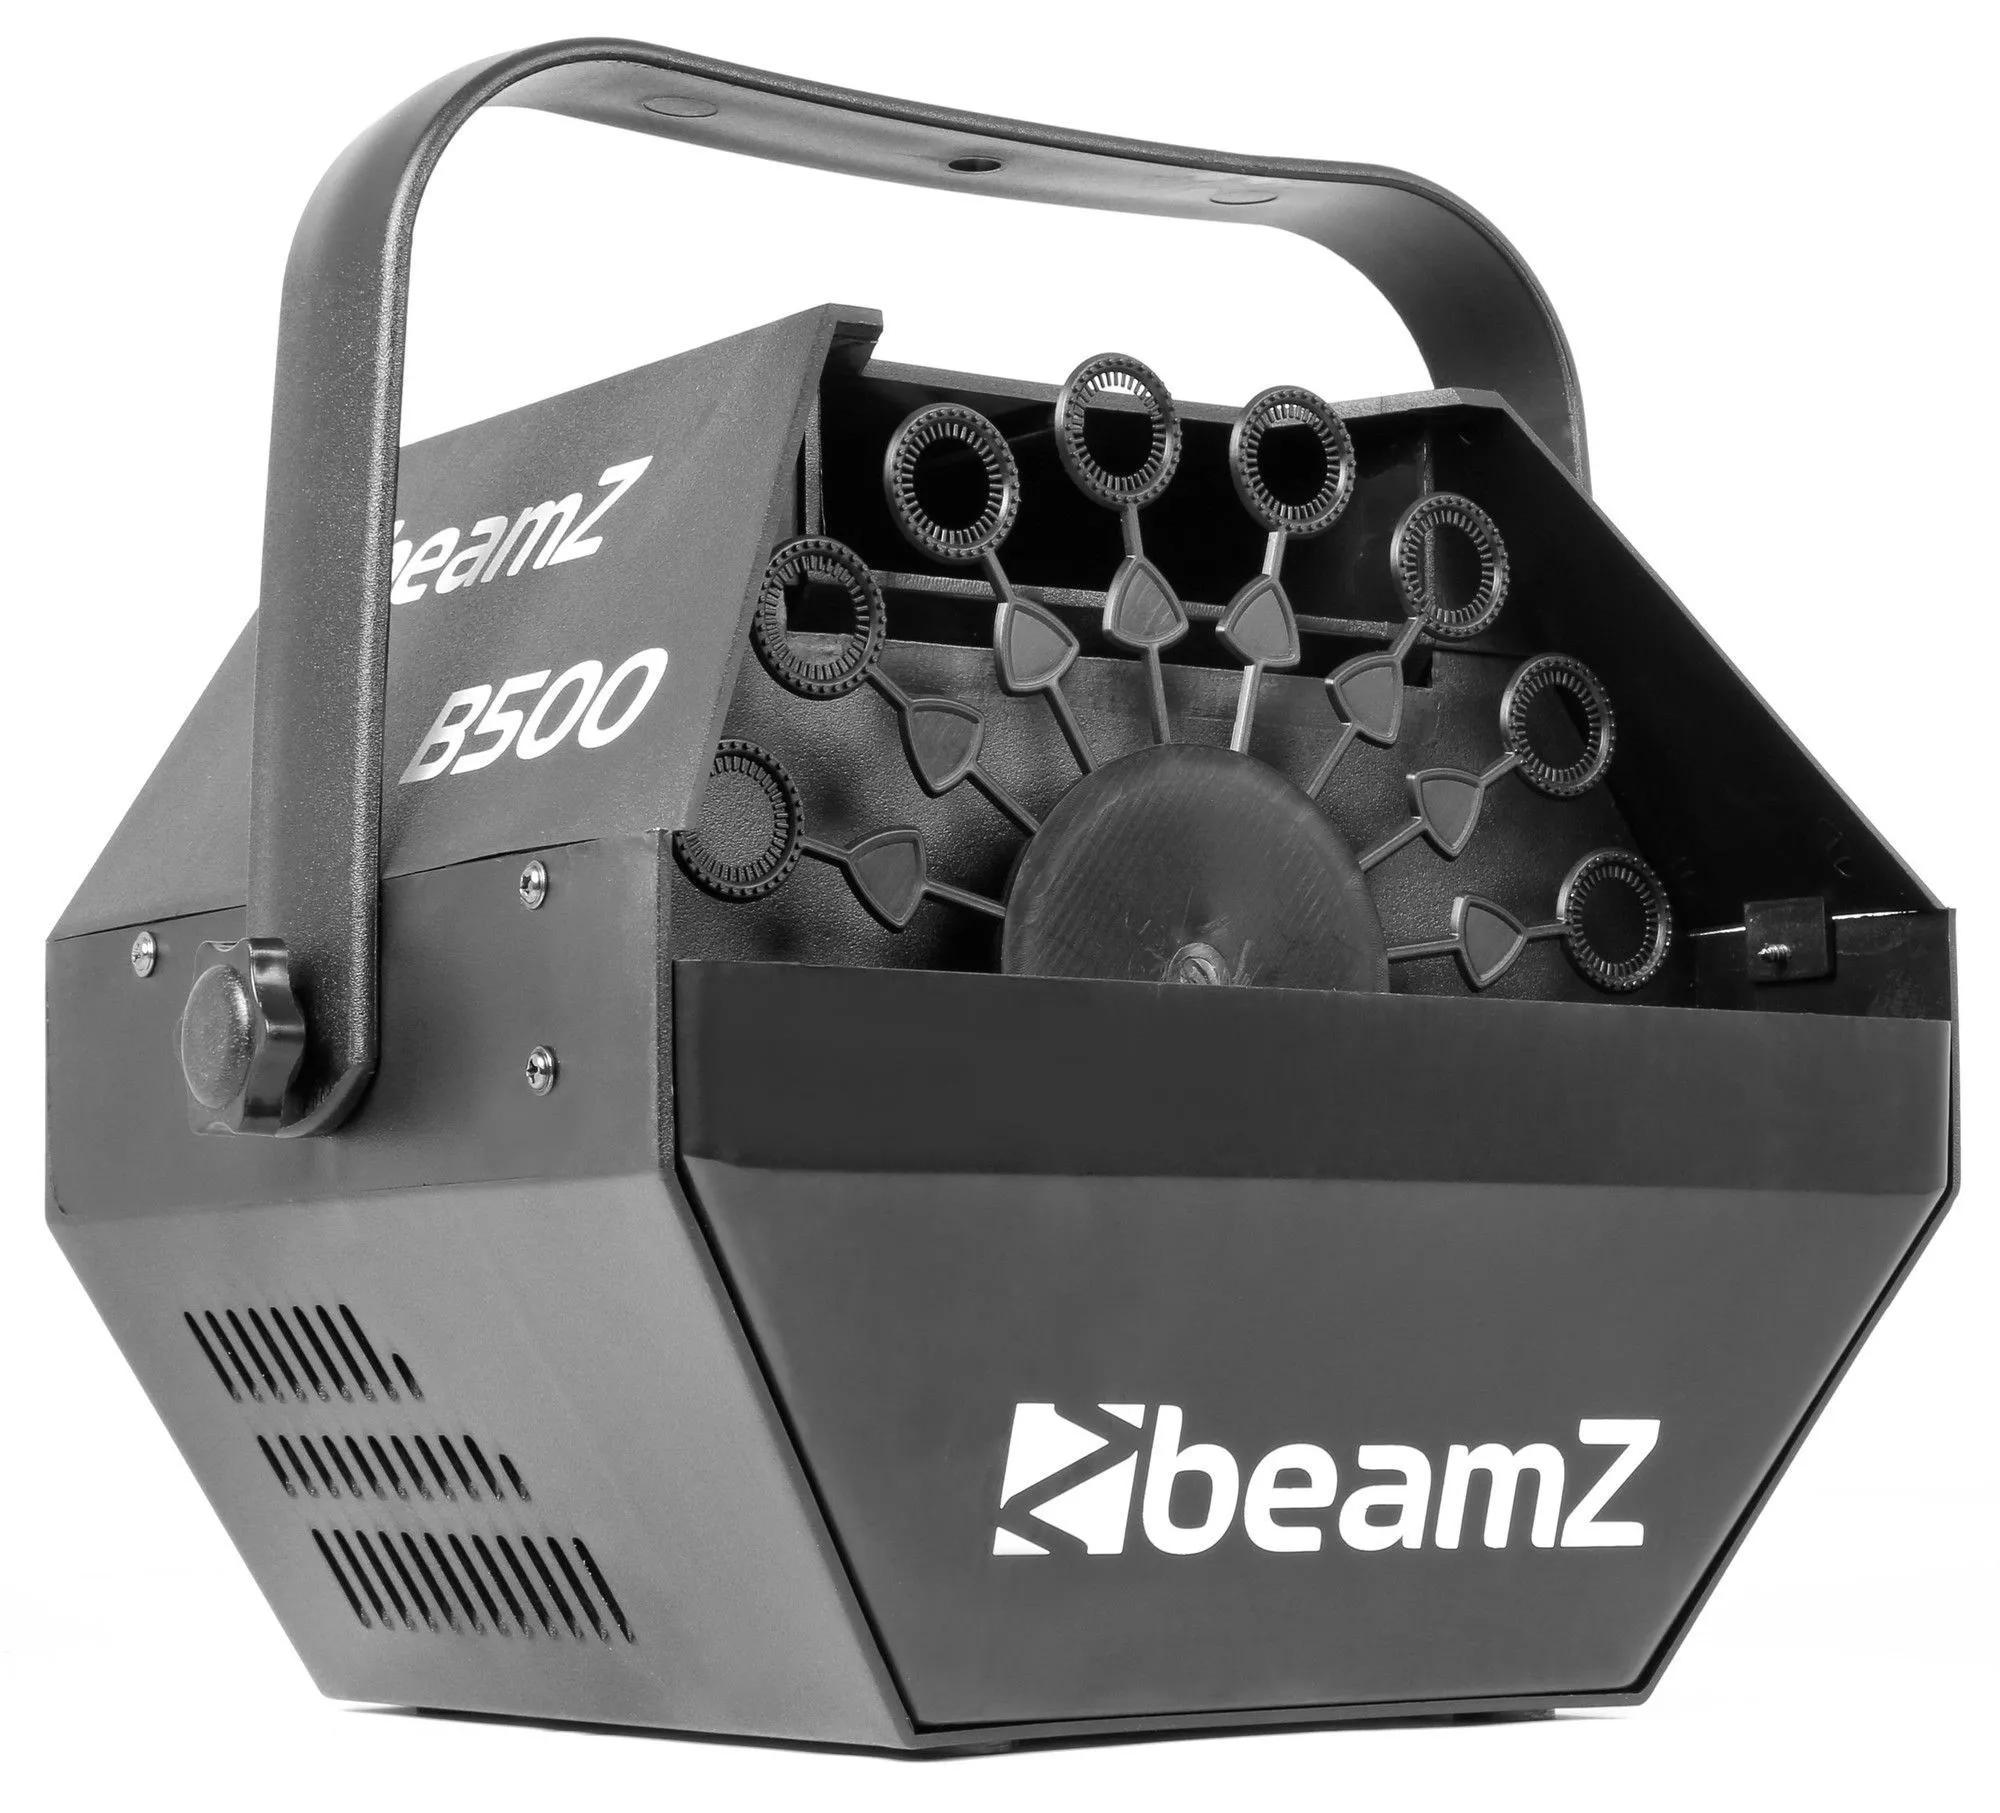 Beamz special effects|bellenblaasmachines